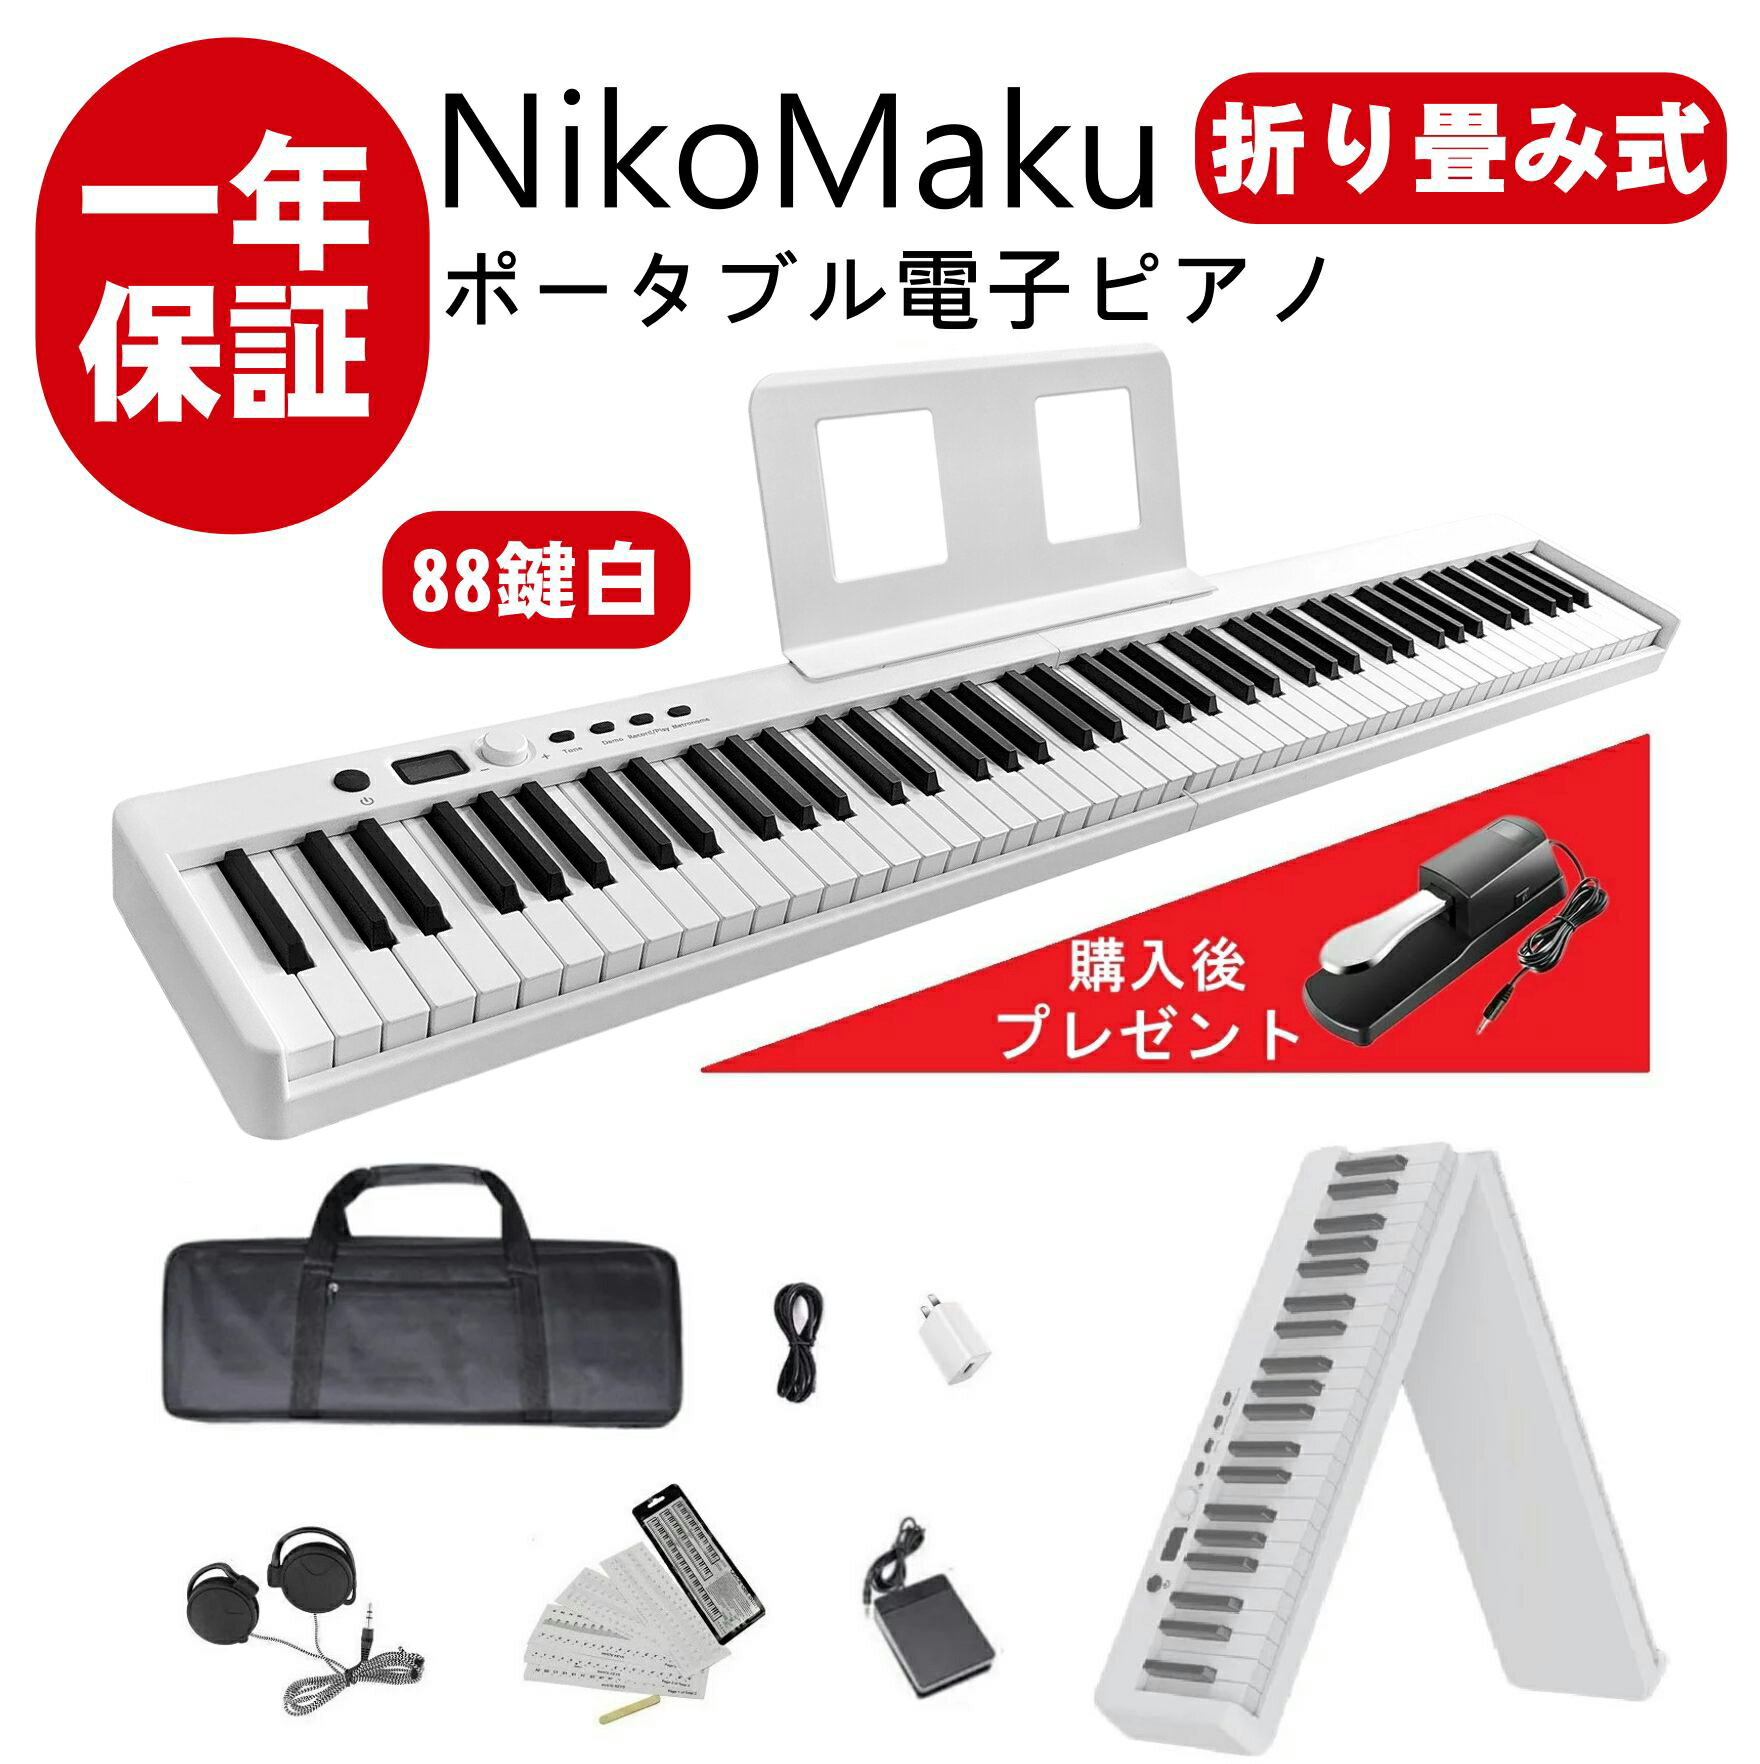 ニコマク NikoMaku 電子ピアノ 88鍵盤 